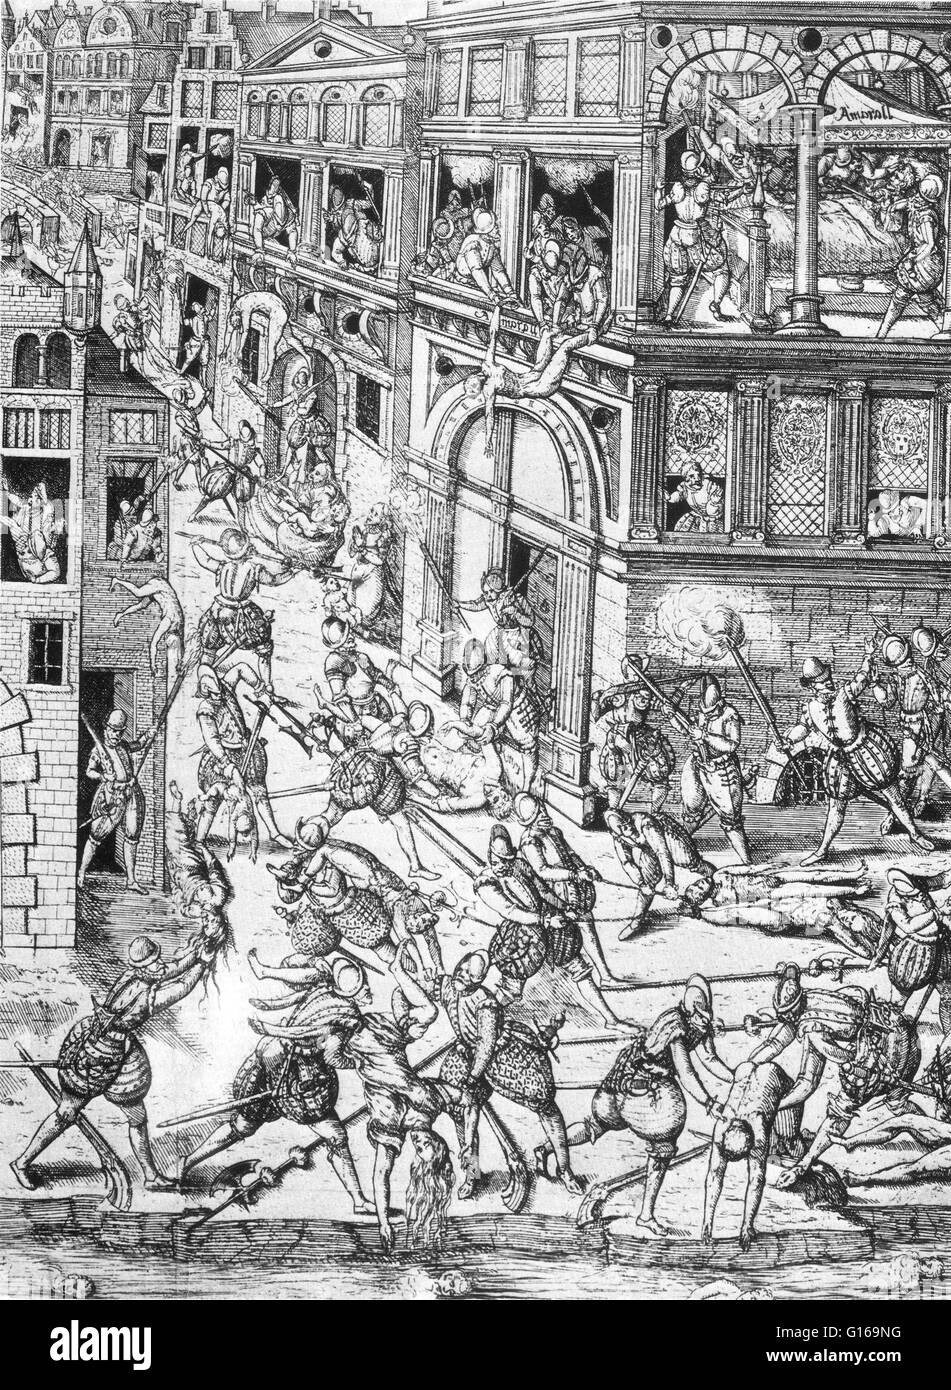 La Chiesa di San Bartolomeo del massacro di giorno in 1572 era un gruppo mirato di omicidi, seguita da un'onda di Cattolica Romana la violenza della folla, entrambe dirette contro ugonotti, durante il francese guerre di religione. Tradizionalmente si ritiene sia fomentata da Caterina de' Medici. Il massacro ha avuto inizio il 23 agosto 1572, due giorni dopo il tentato omicidio di Ammiraglio Gaspard de Coligny, i militari e i leader politici degli ugonotti. Il re ordinò l uccisione di un gruppo di dirigenti Huguenot, compresi Coligny e la macellazione si diffuse in tutta Parigi. Che dura diverse settimane, il massac Foto Stock